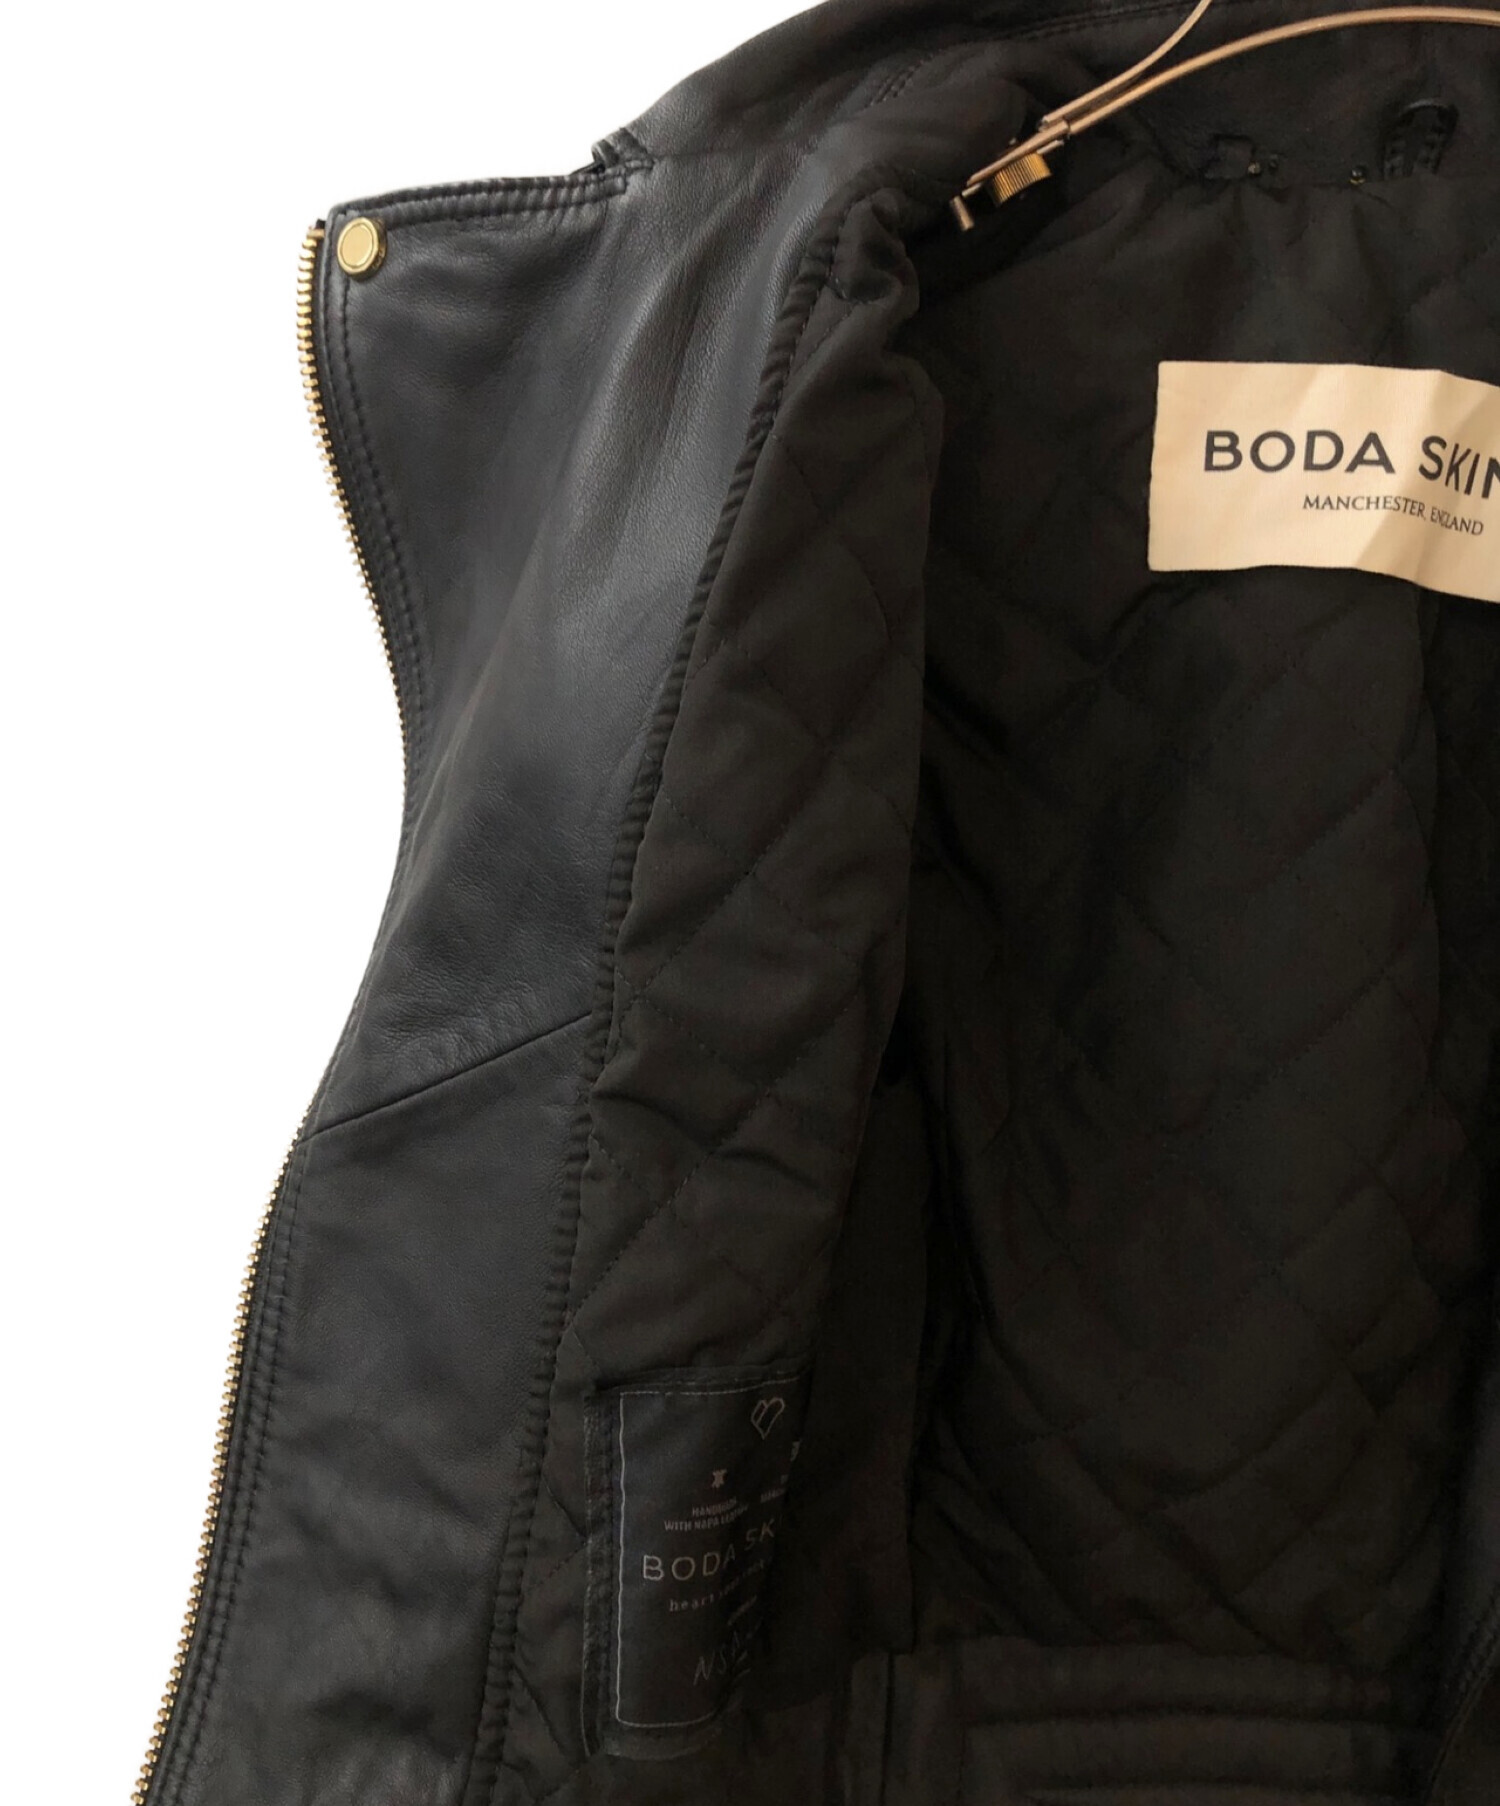 BODA SKINS (ボダスキンズ) フルグレインシープスキンダブルライダースジャケット ブラック サイズ:11